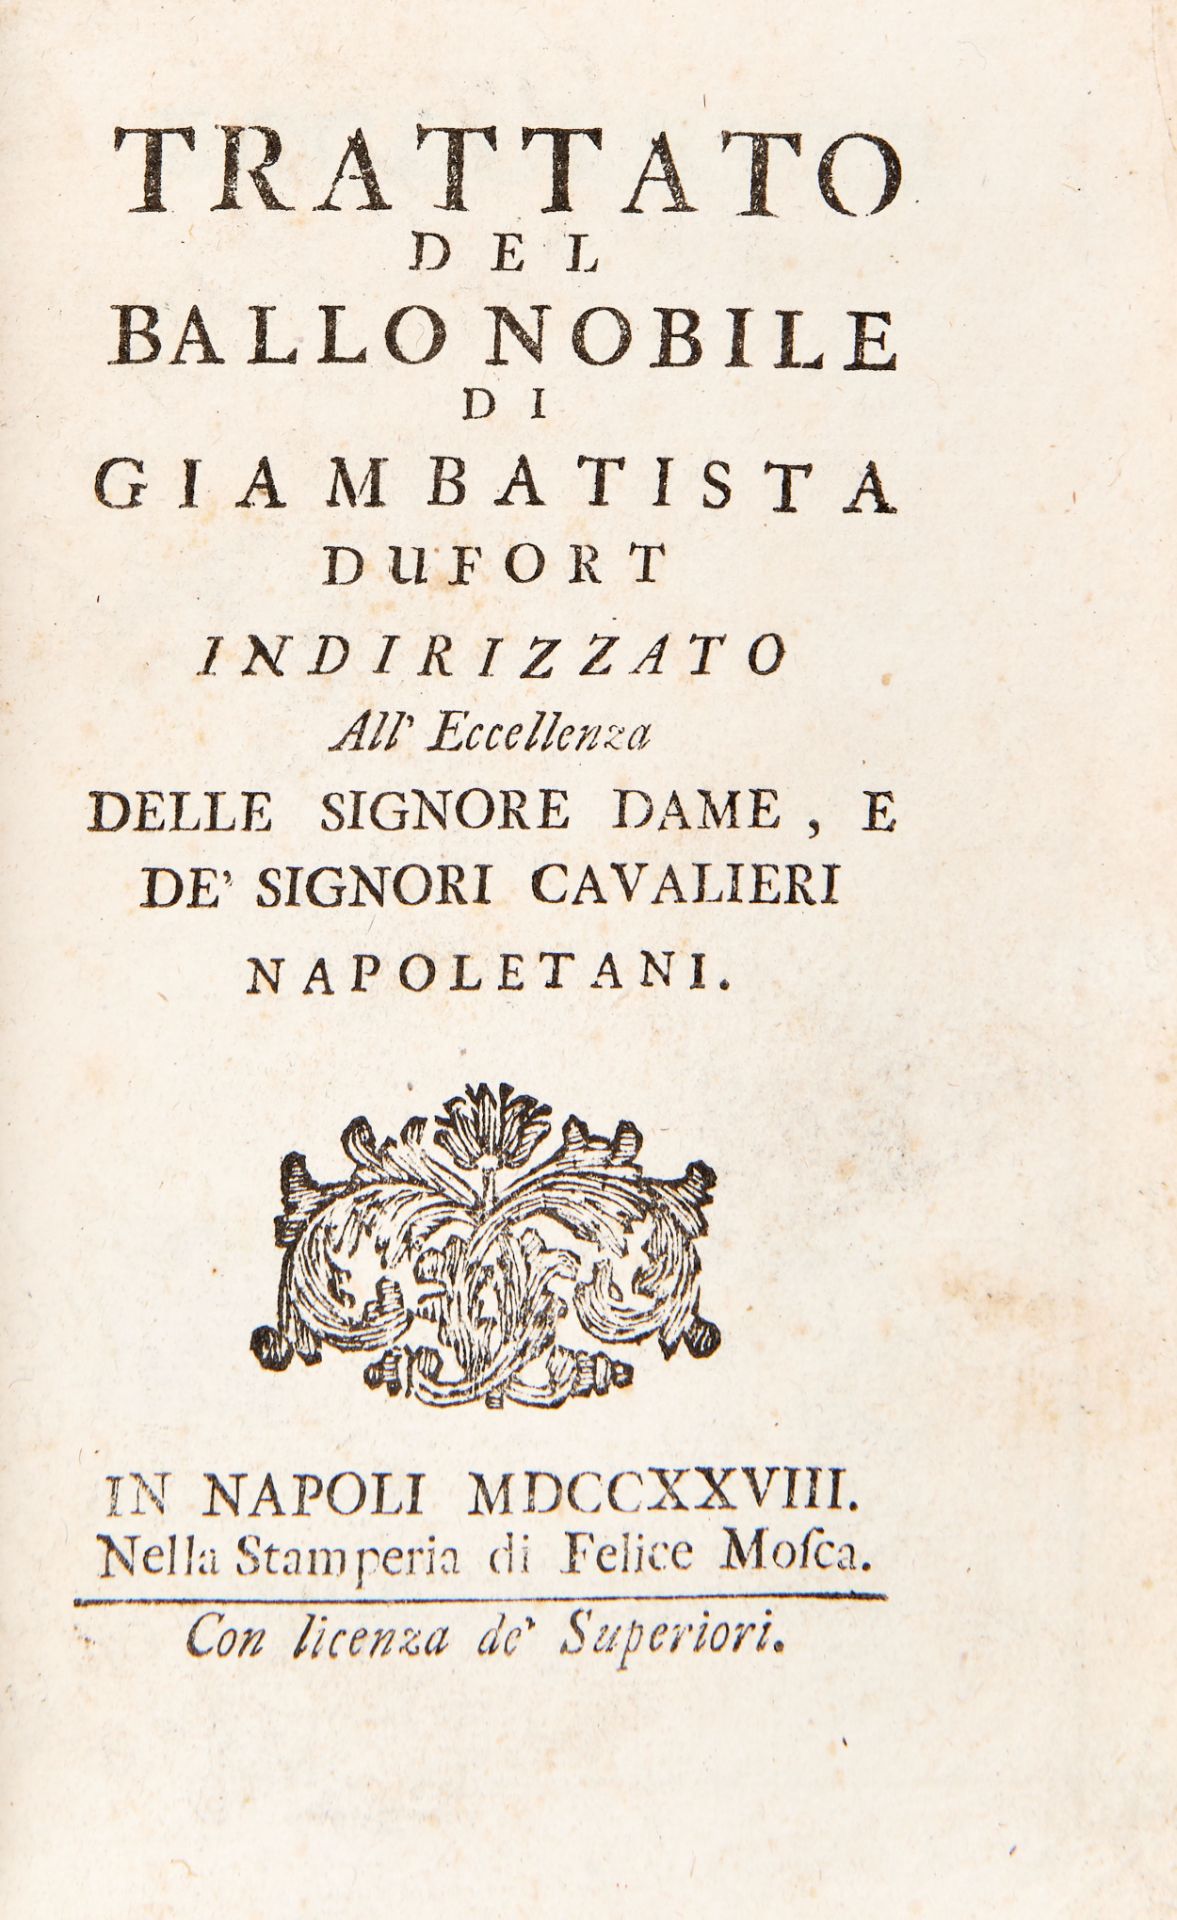 [DANCE] DUFORT Giambattista (1680-1728). Trattato del ballo nobile indirizzato all'eccellenze delle - Image 2 of 3